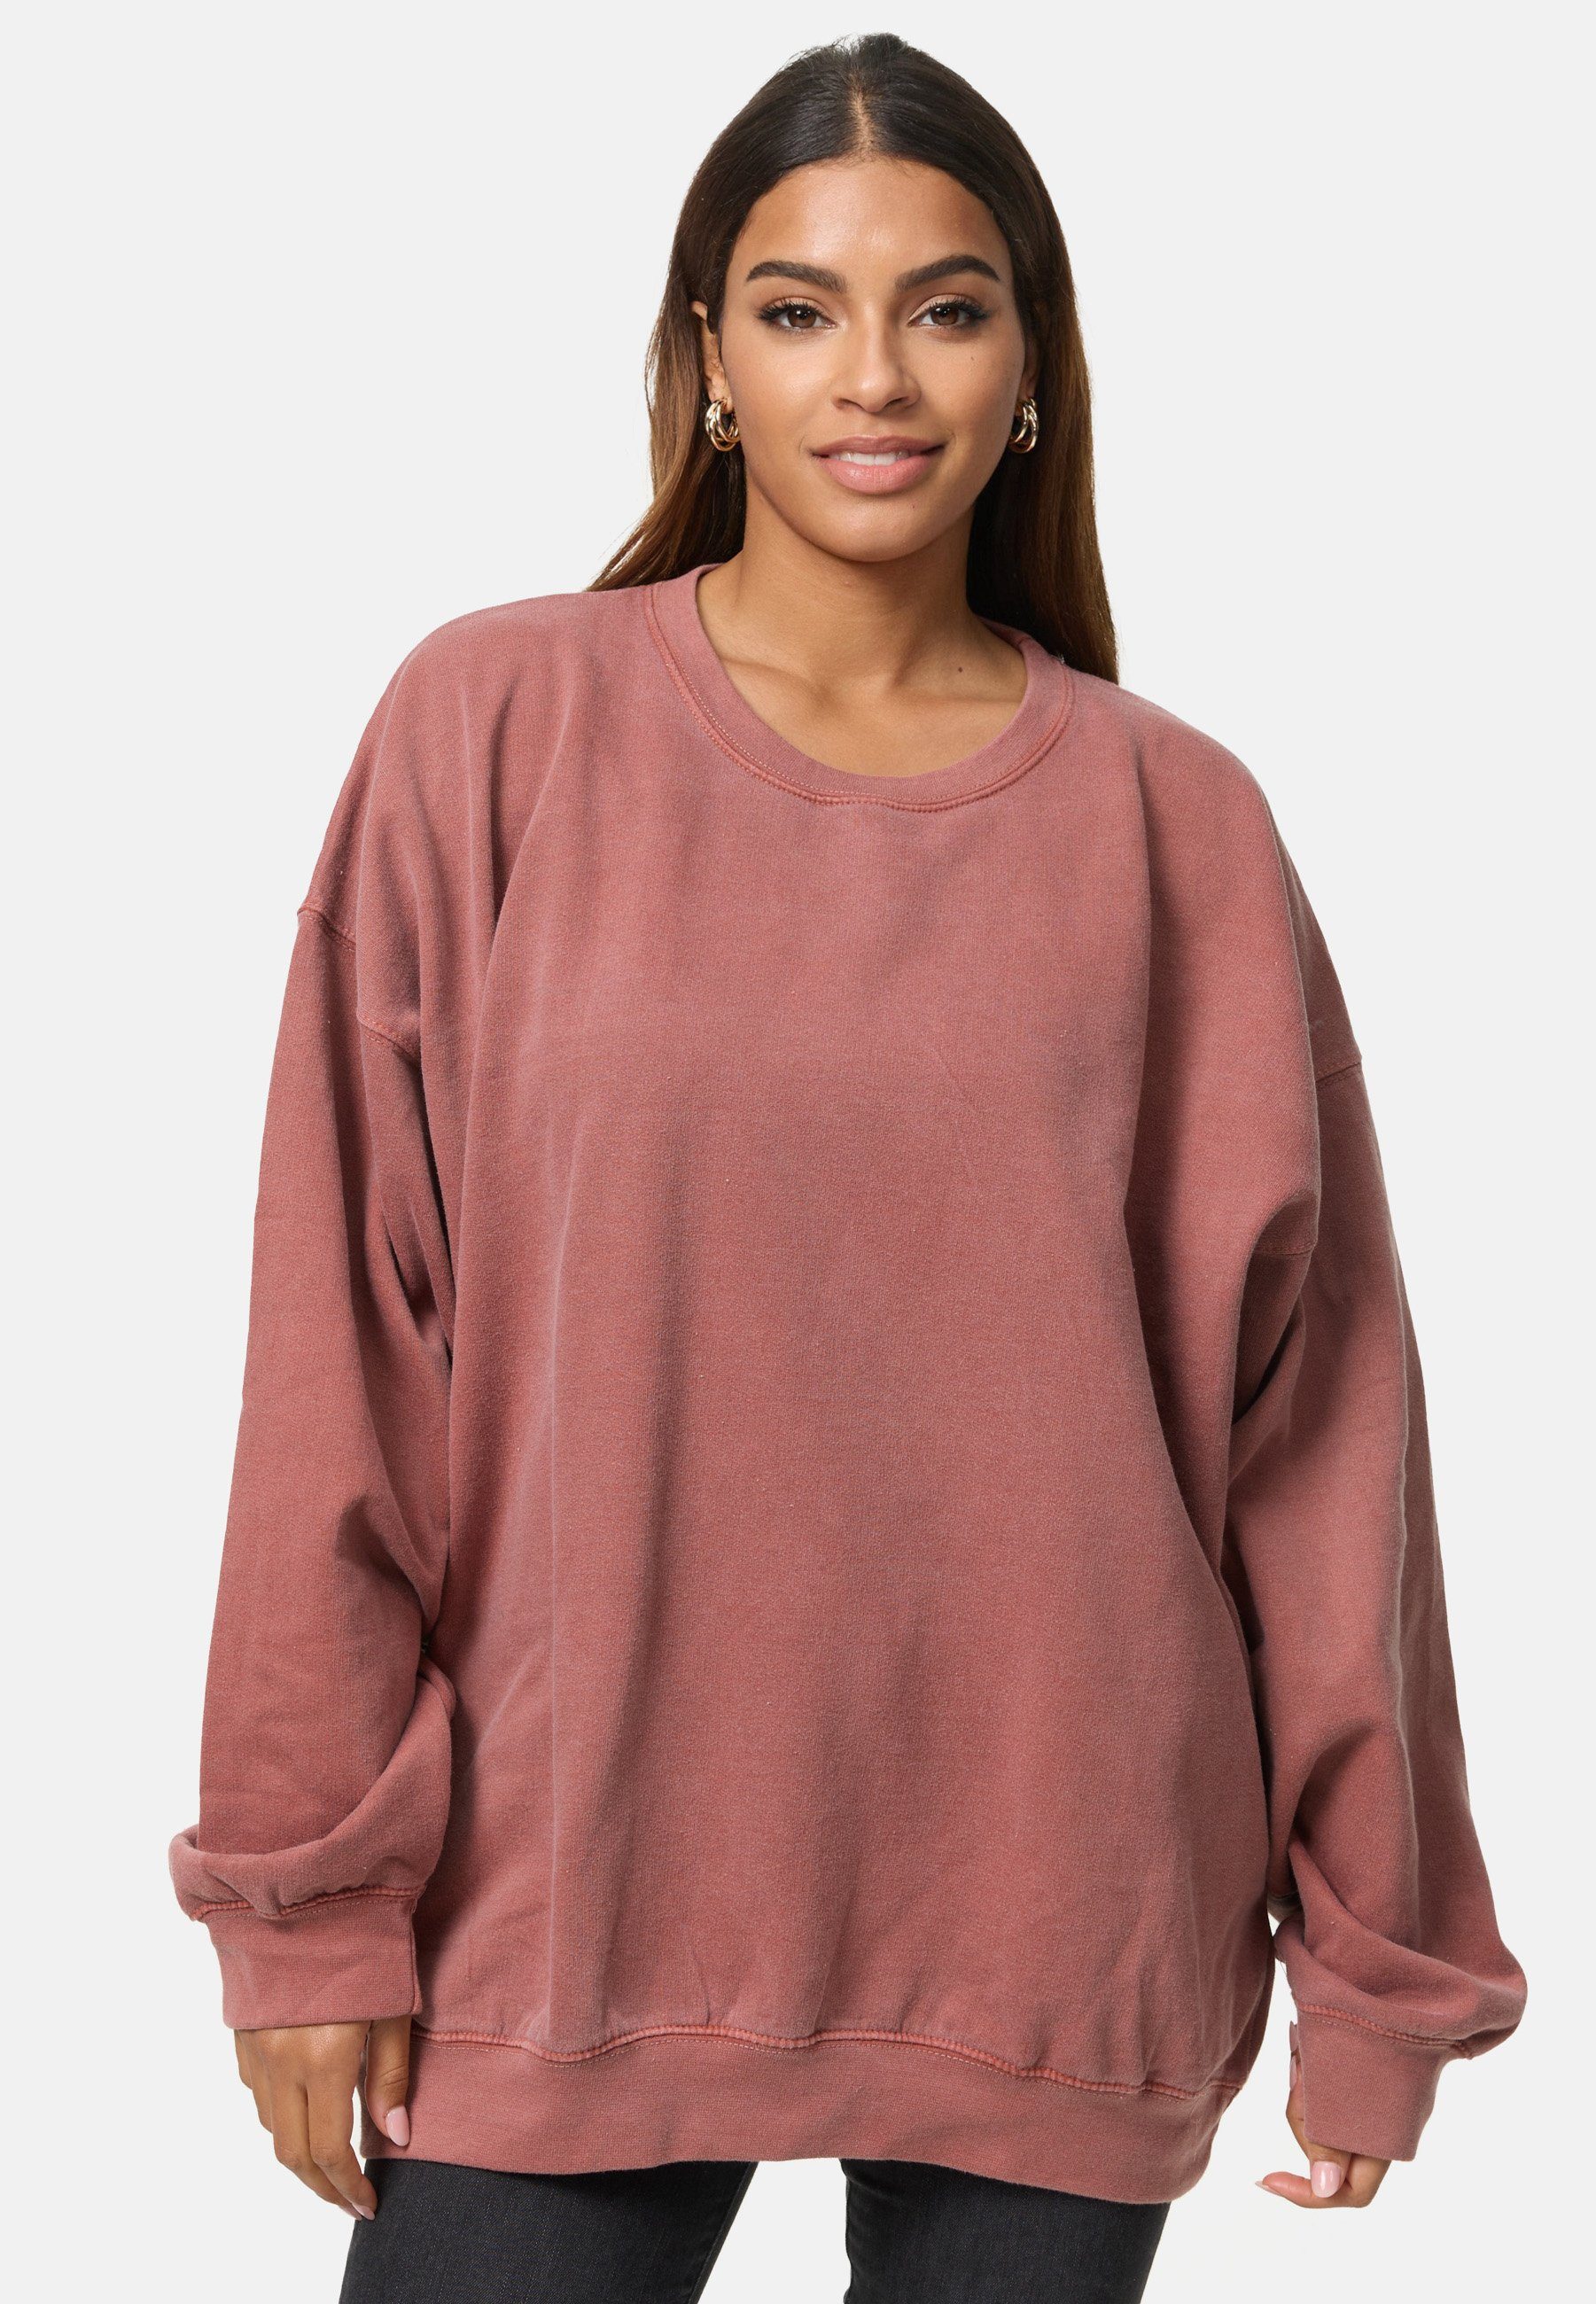 UNI Worldclassca Longsweatshirt Langarmshirt Worldclassca Pullover Sweatshirt Oversized Einfarbig